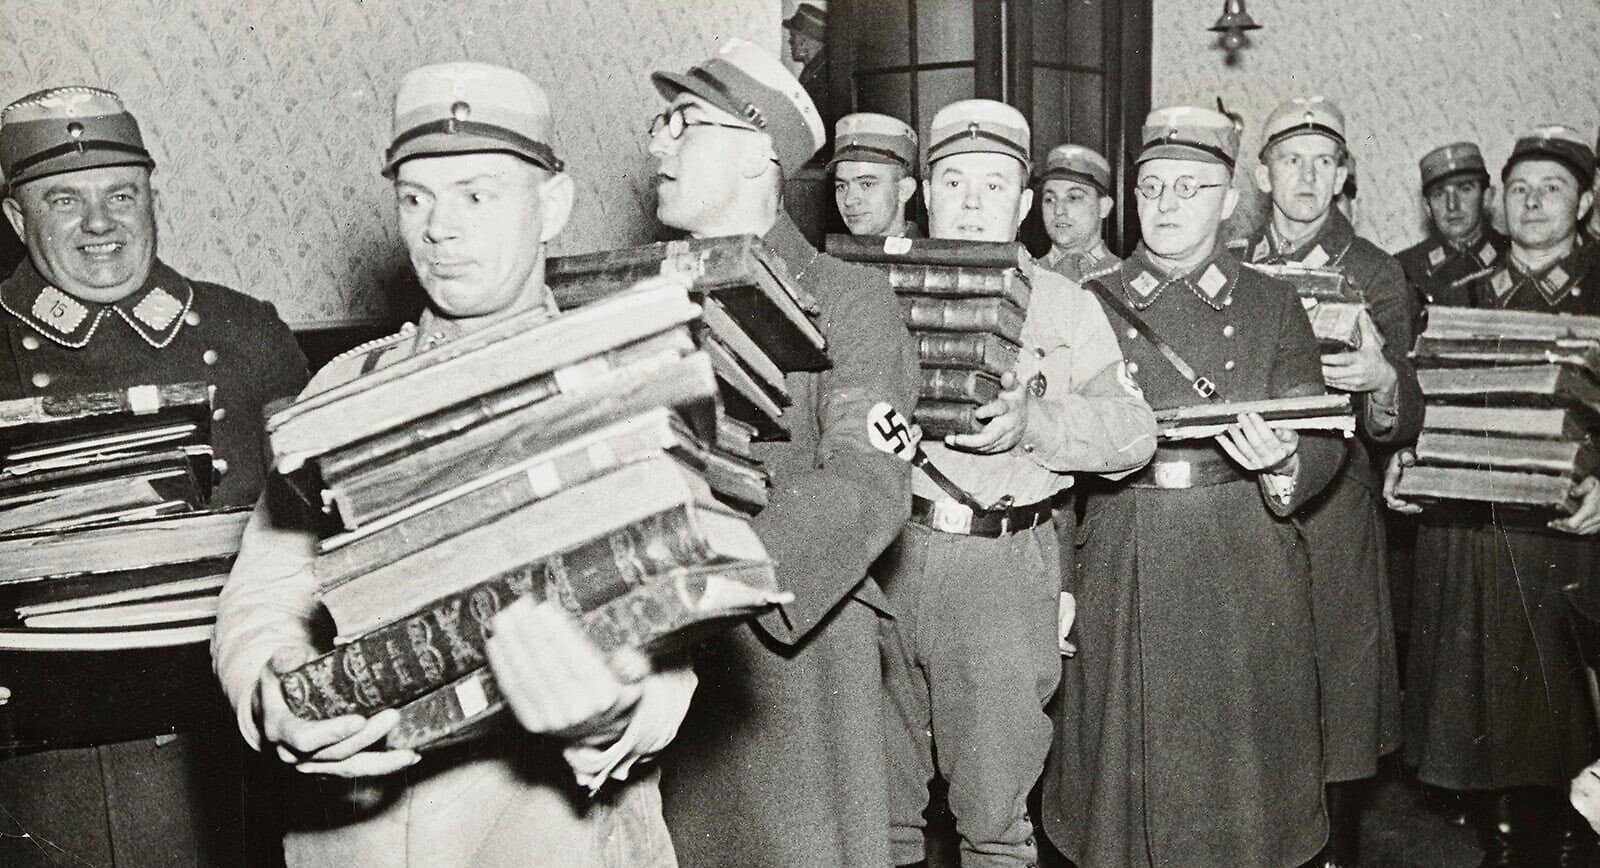 נאצים נושאים ספרים יהודיים במהלך ליל הבדולח, 10 בנובמבר 1938 (צילום: Yad Vashem via AP)